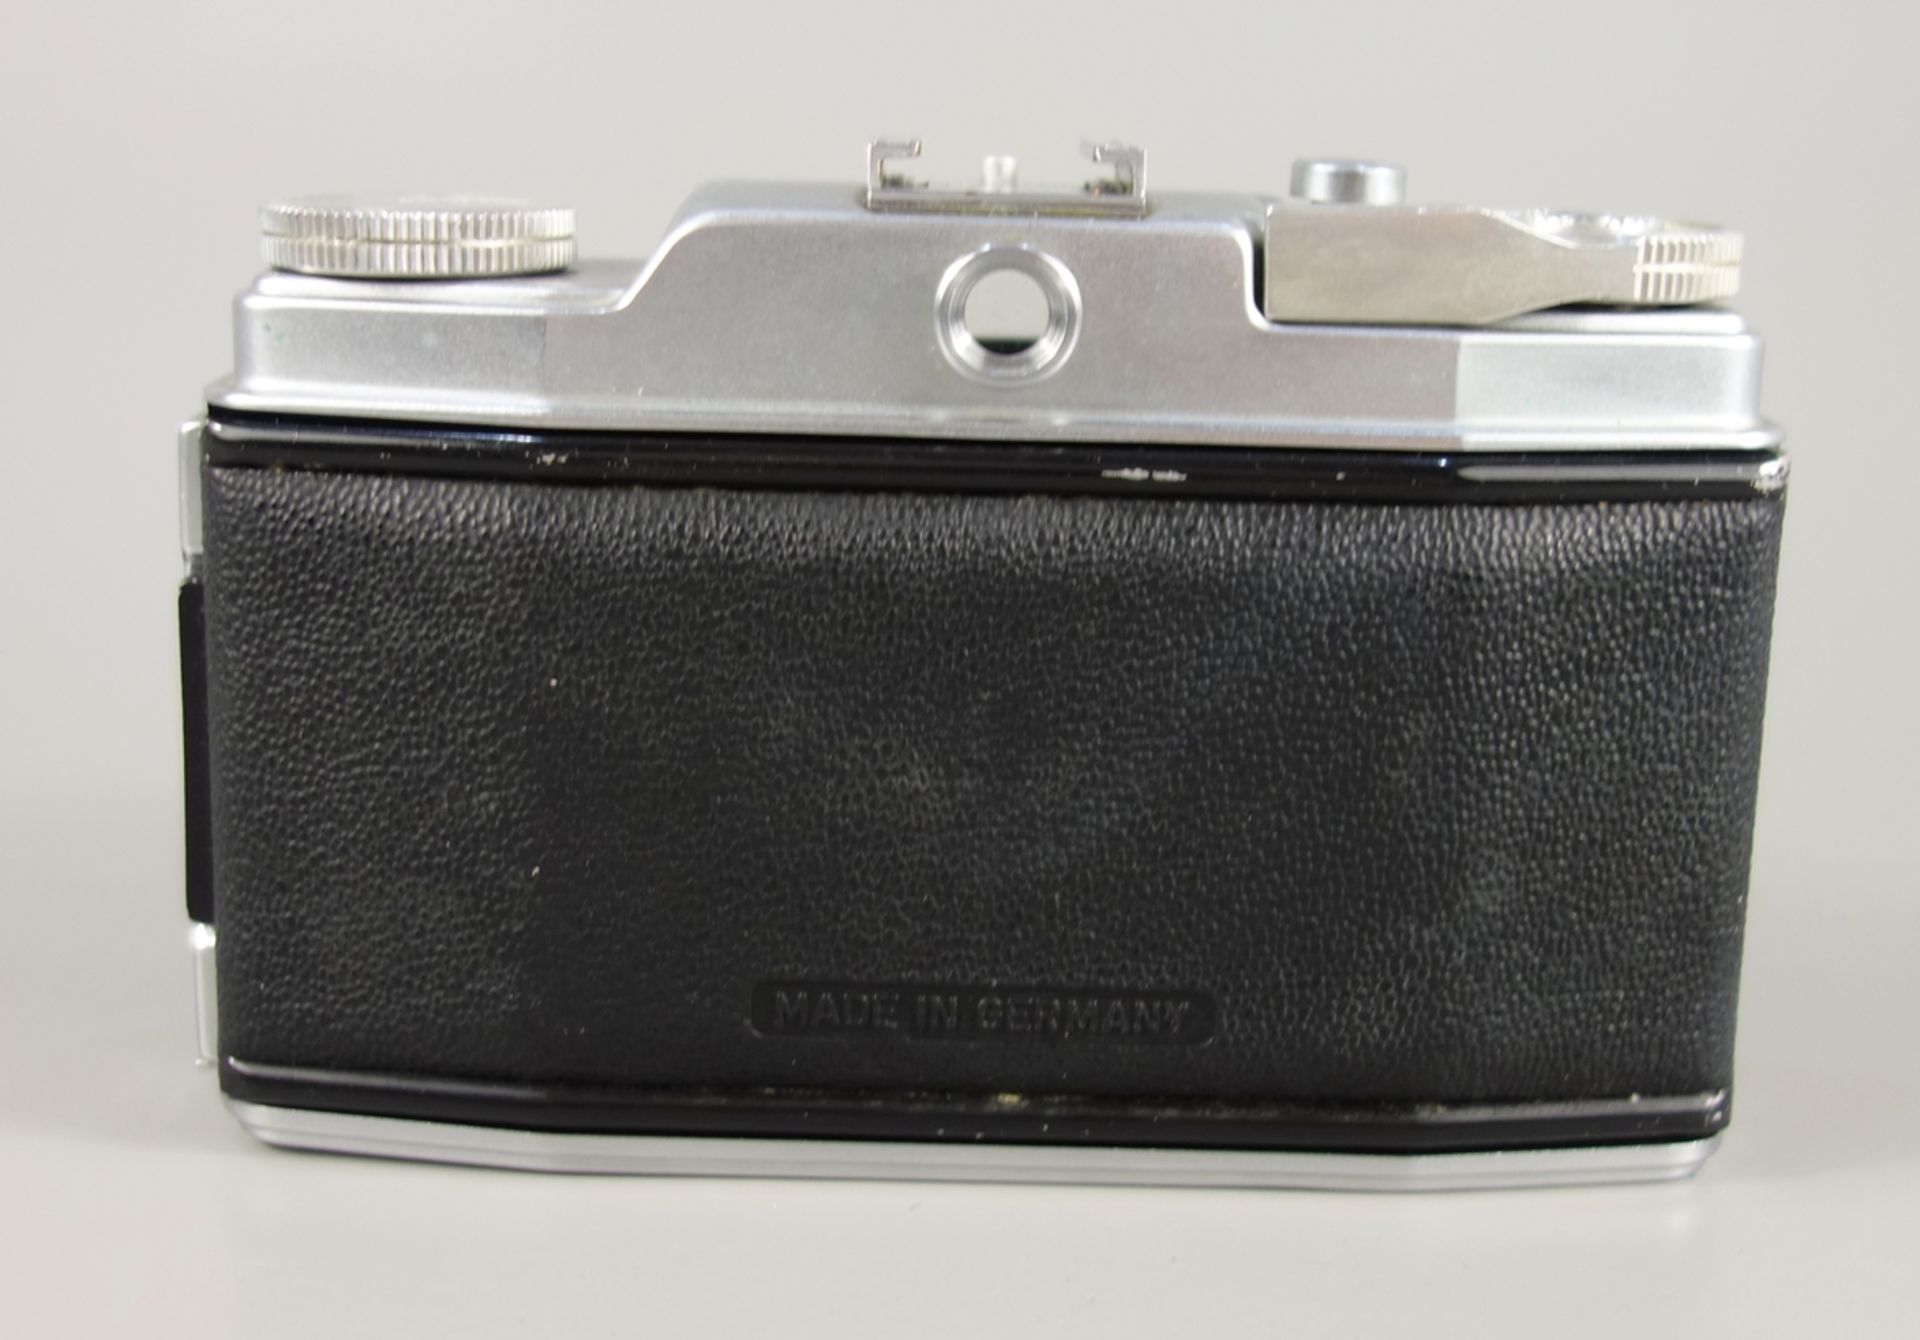 Agfa "Silette Pronto", 1950er Jahre, Kleinbild-Sucherkamera, feststehendes Objektiv Schneider- - Bild 3 aus 3